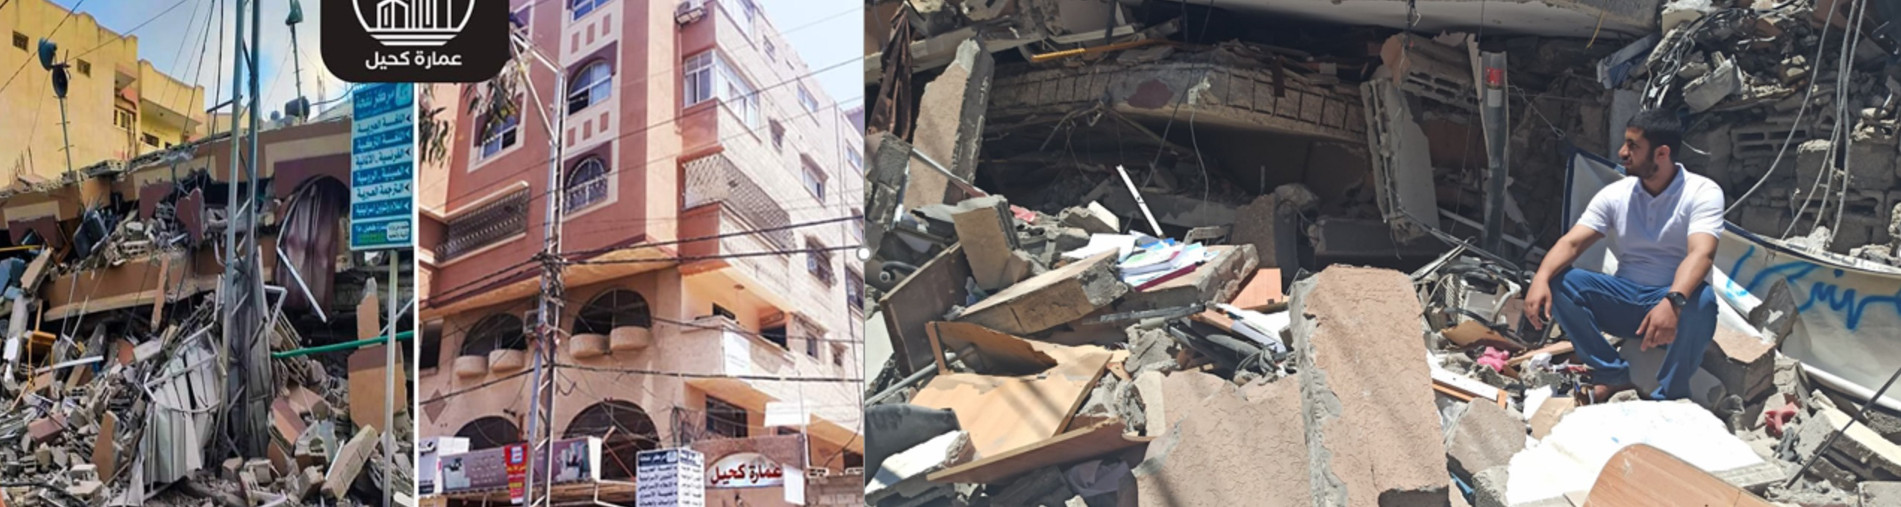 Restore Gaza School Destroyed By Airstrike